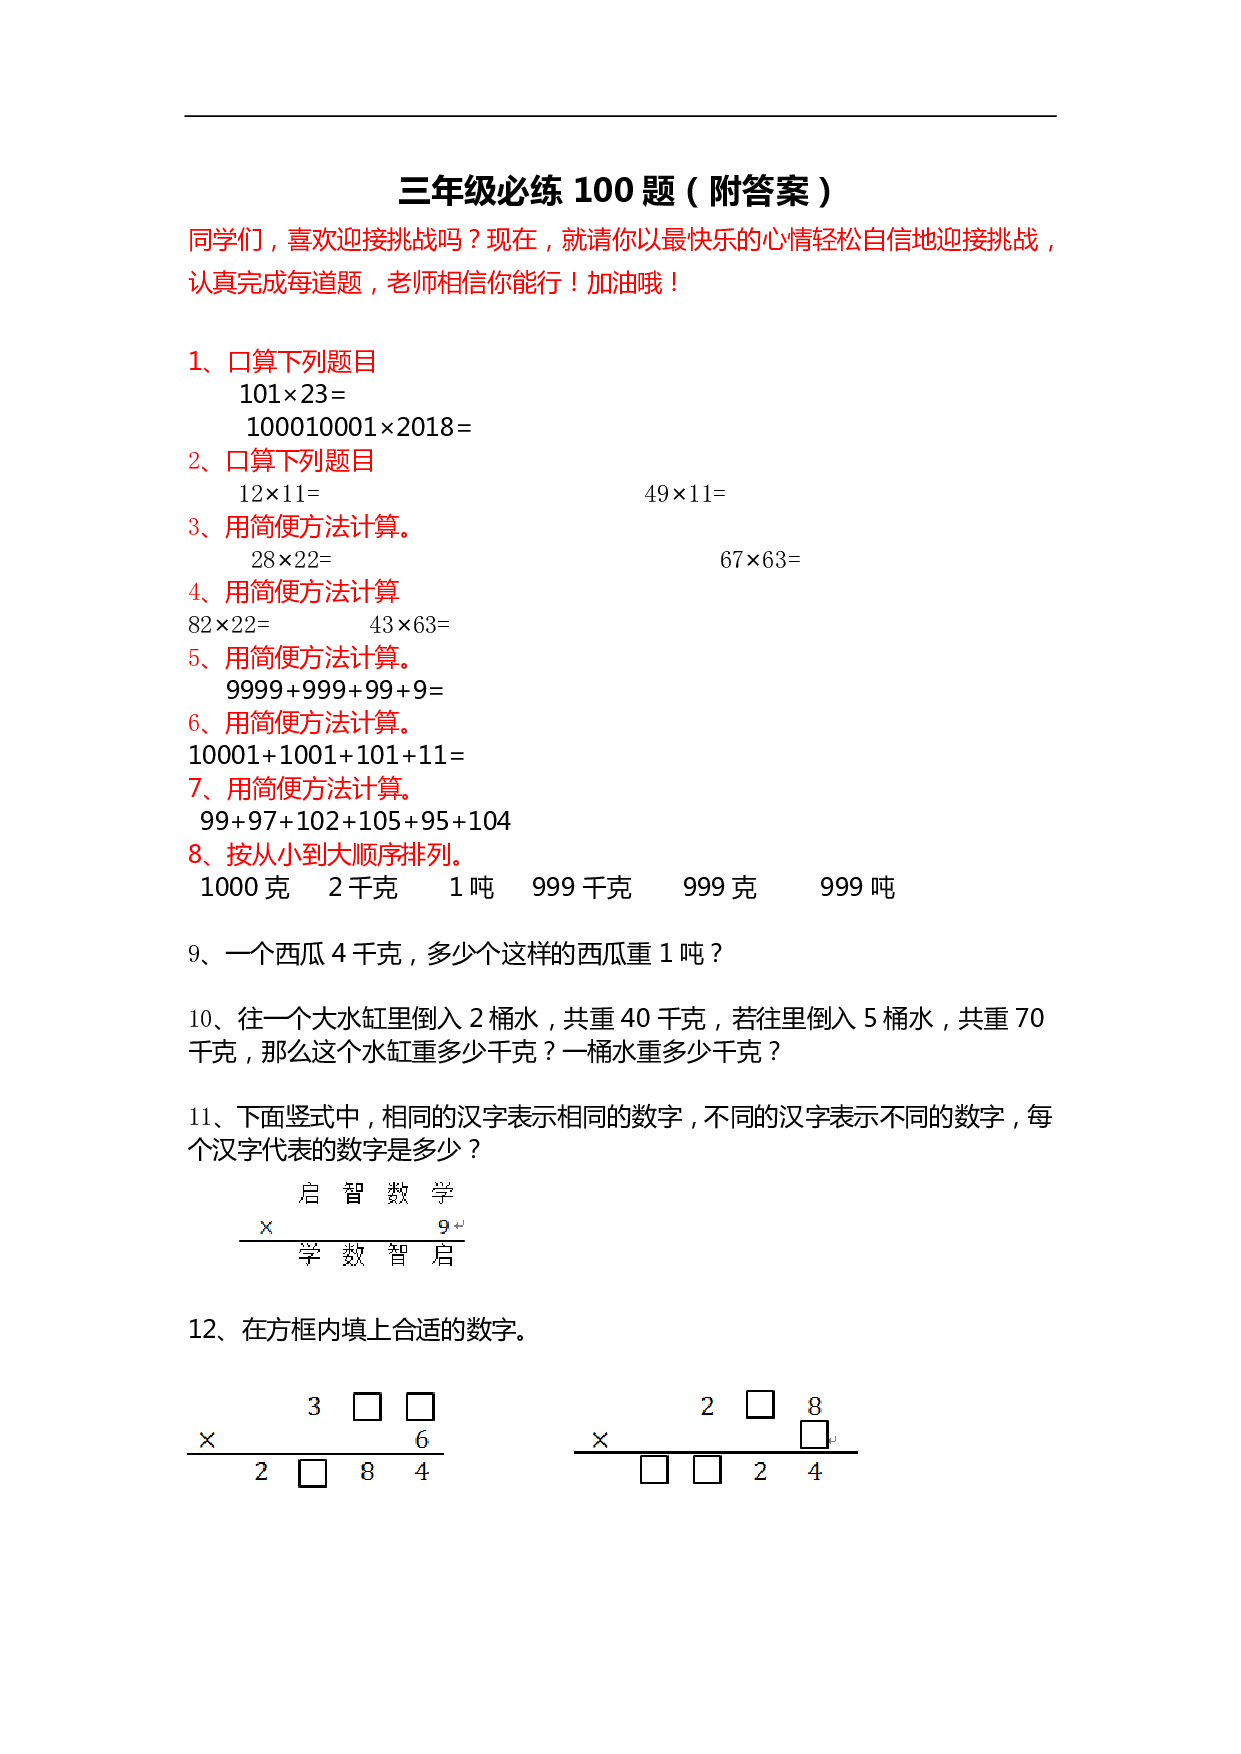 【人教版数学】三年级必练100题